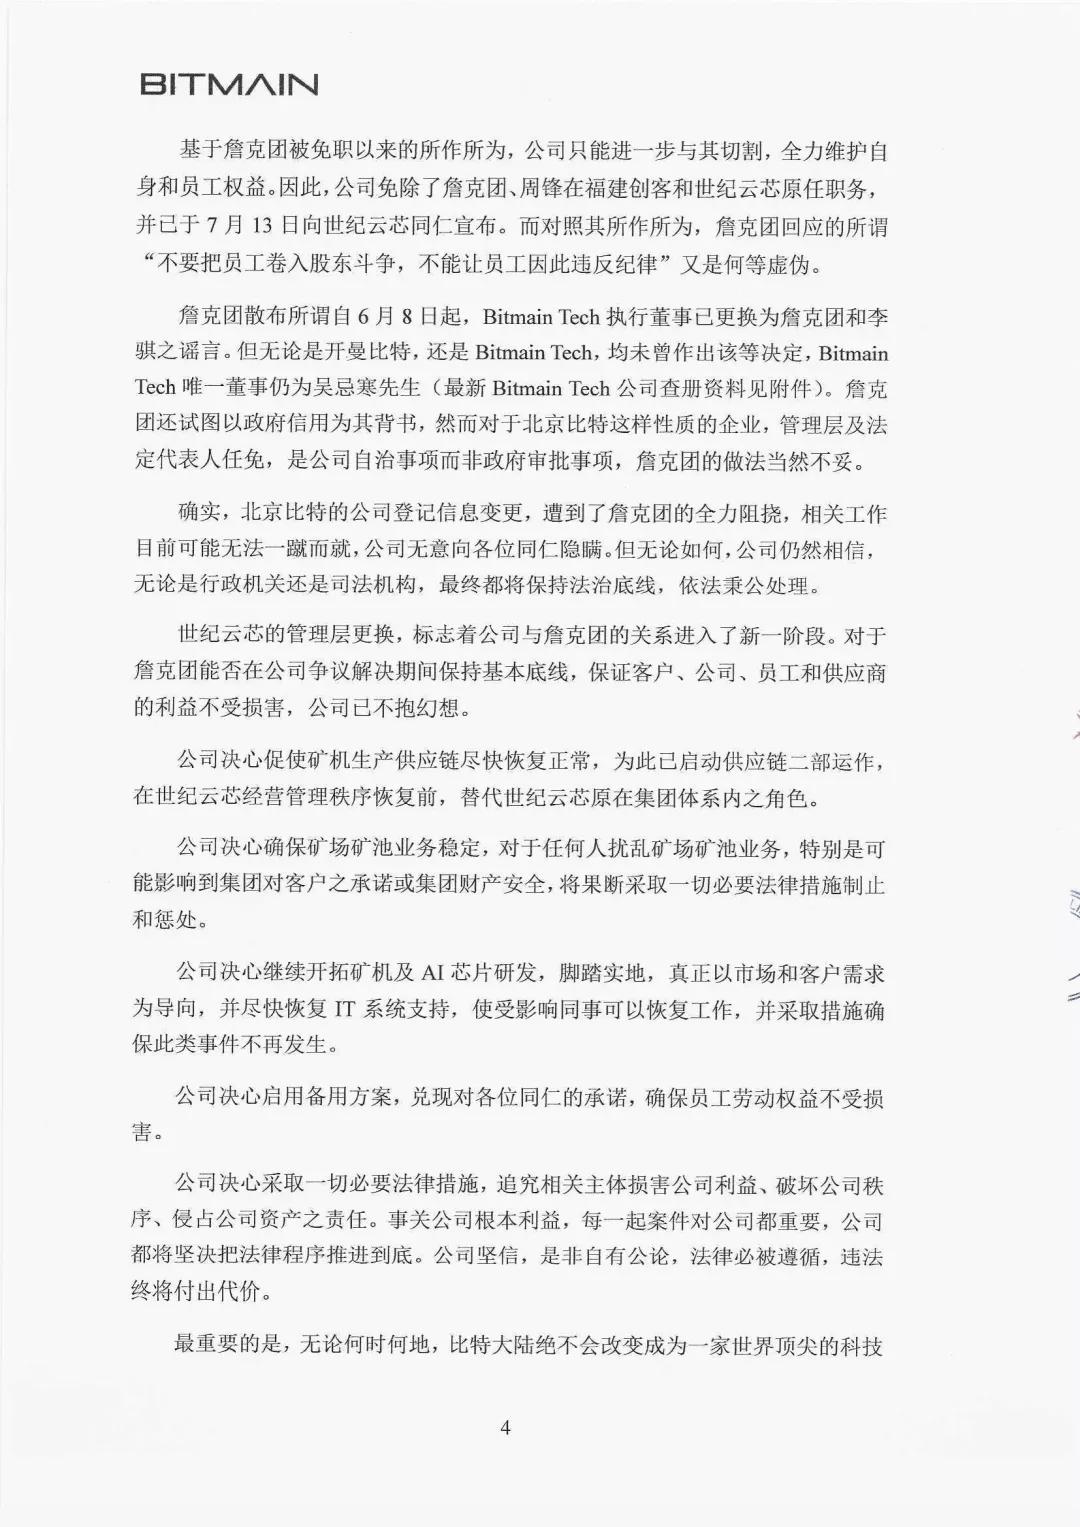 北京比特大陆《再致全体同仁书》 官方证实詹克团人设崩塌史